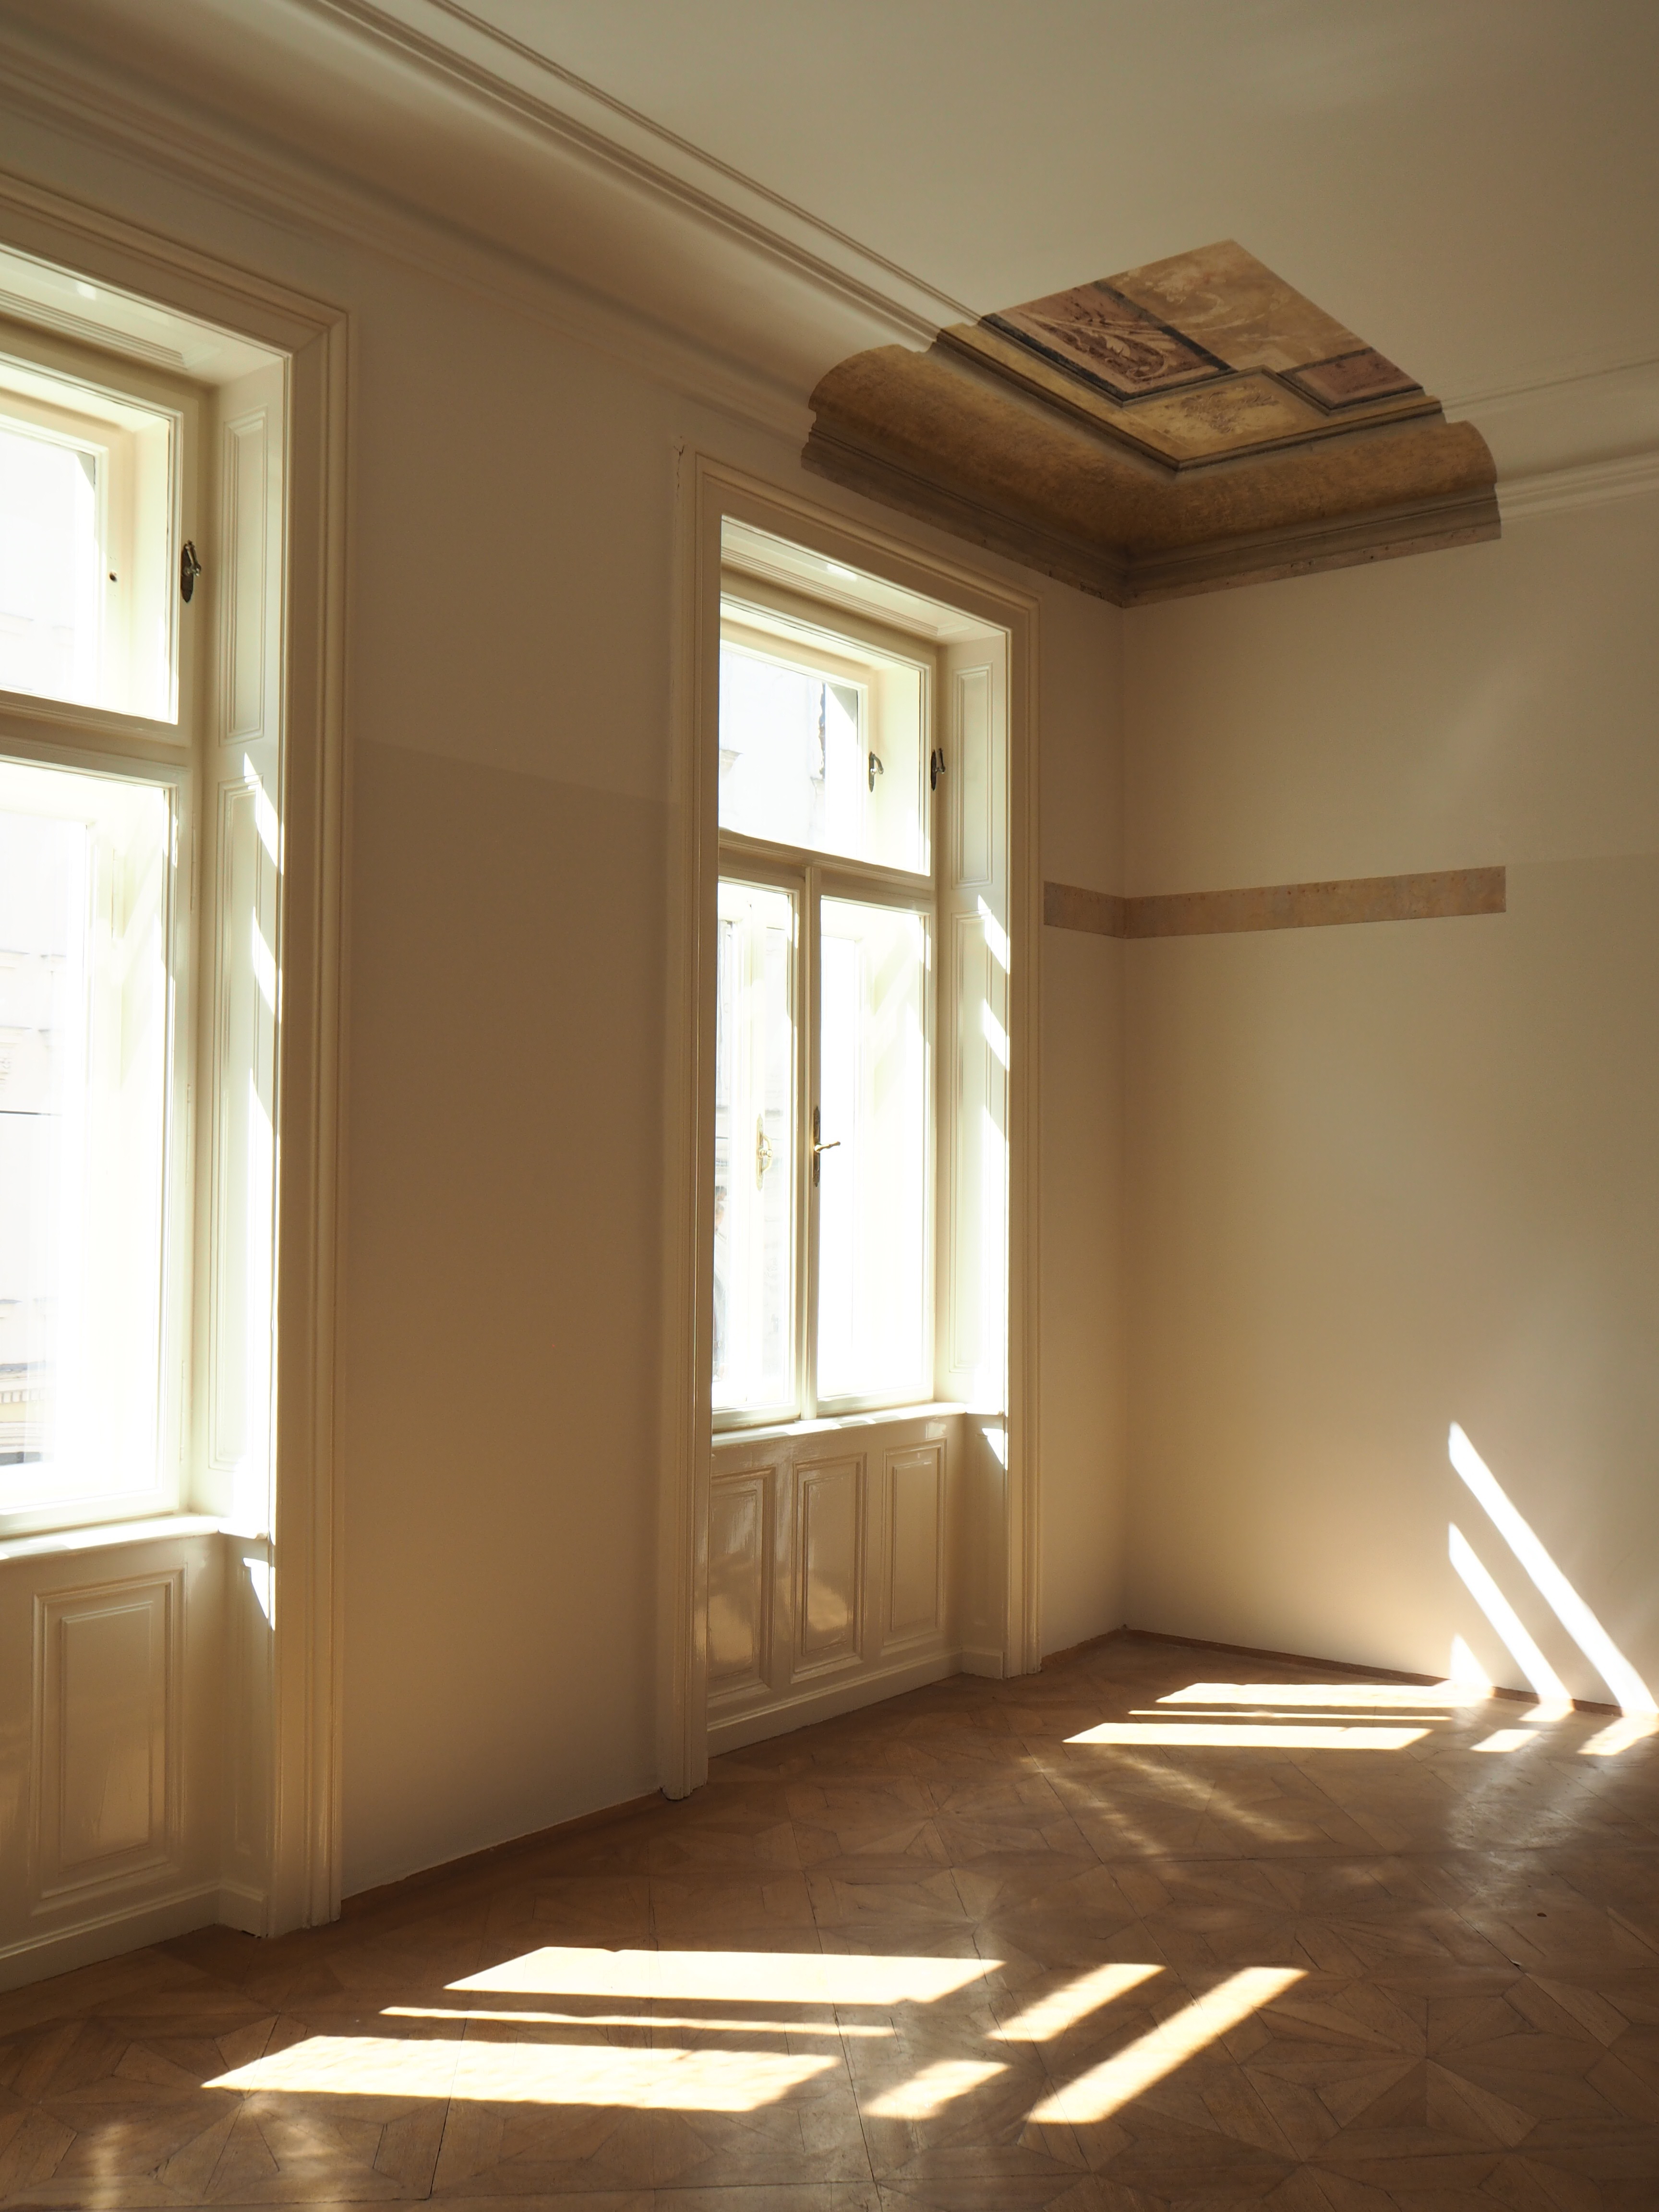 Particolare della camera di Anna Freud - con affresco sul soffitto lasciato in vista 